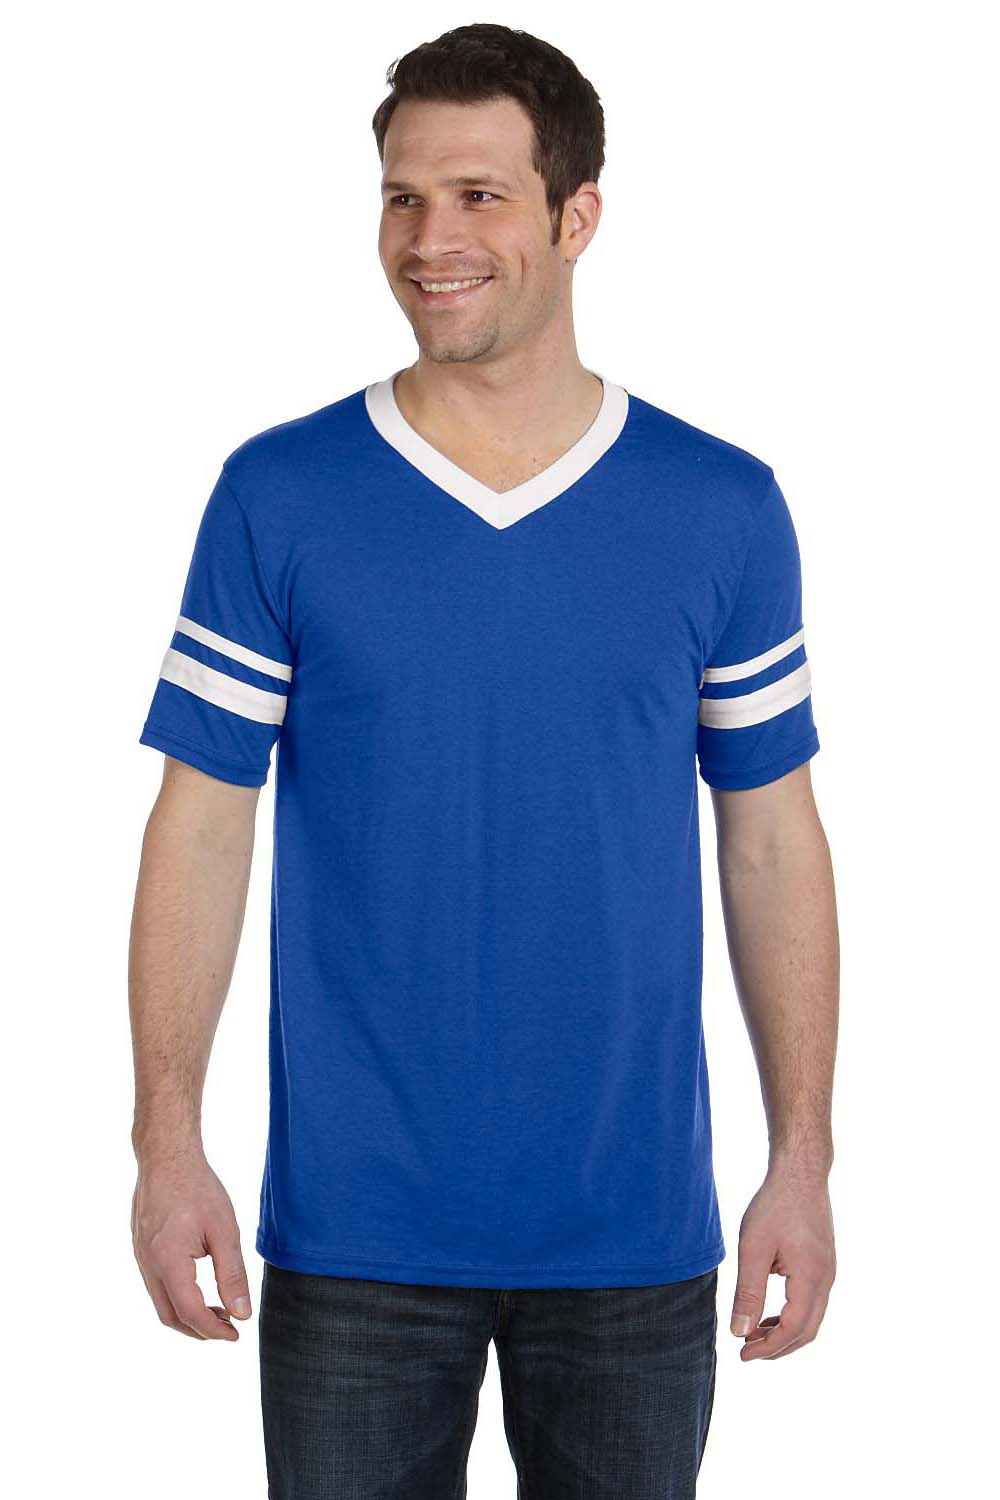 Augusta Sportswear 360 Mens Short Sleeve V-Neck T-Shirt Royal Blue/White Model Front